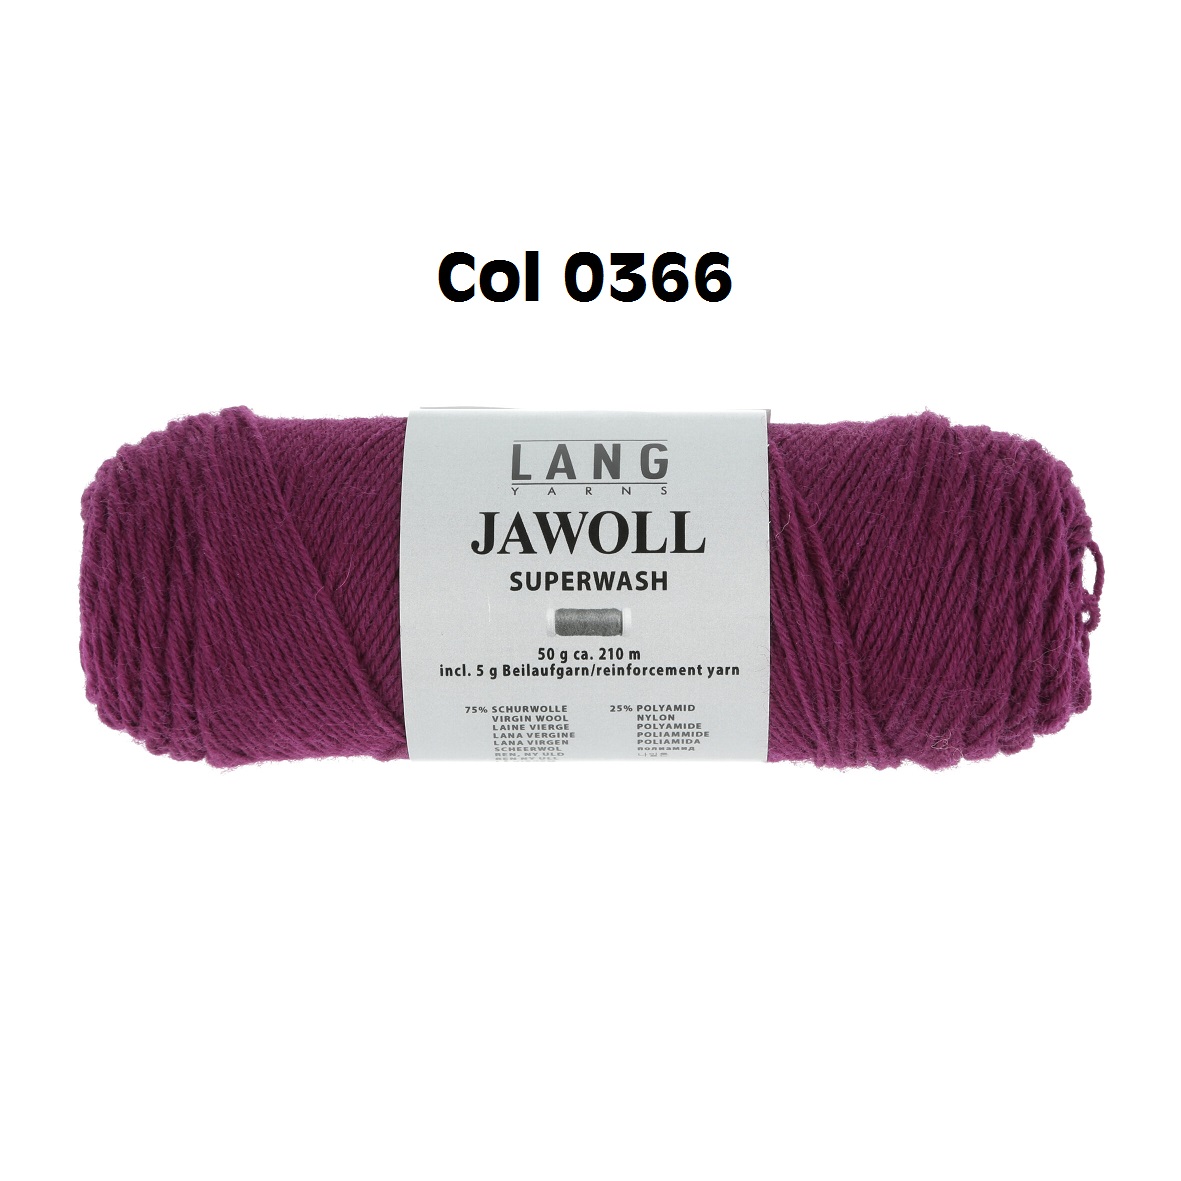 Traitement superwash jawoll pelote de laine couleur violet 190 cm 